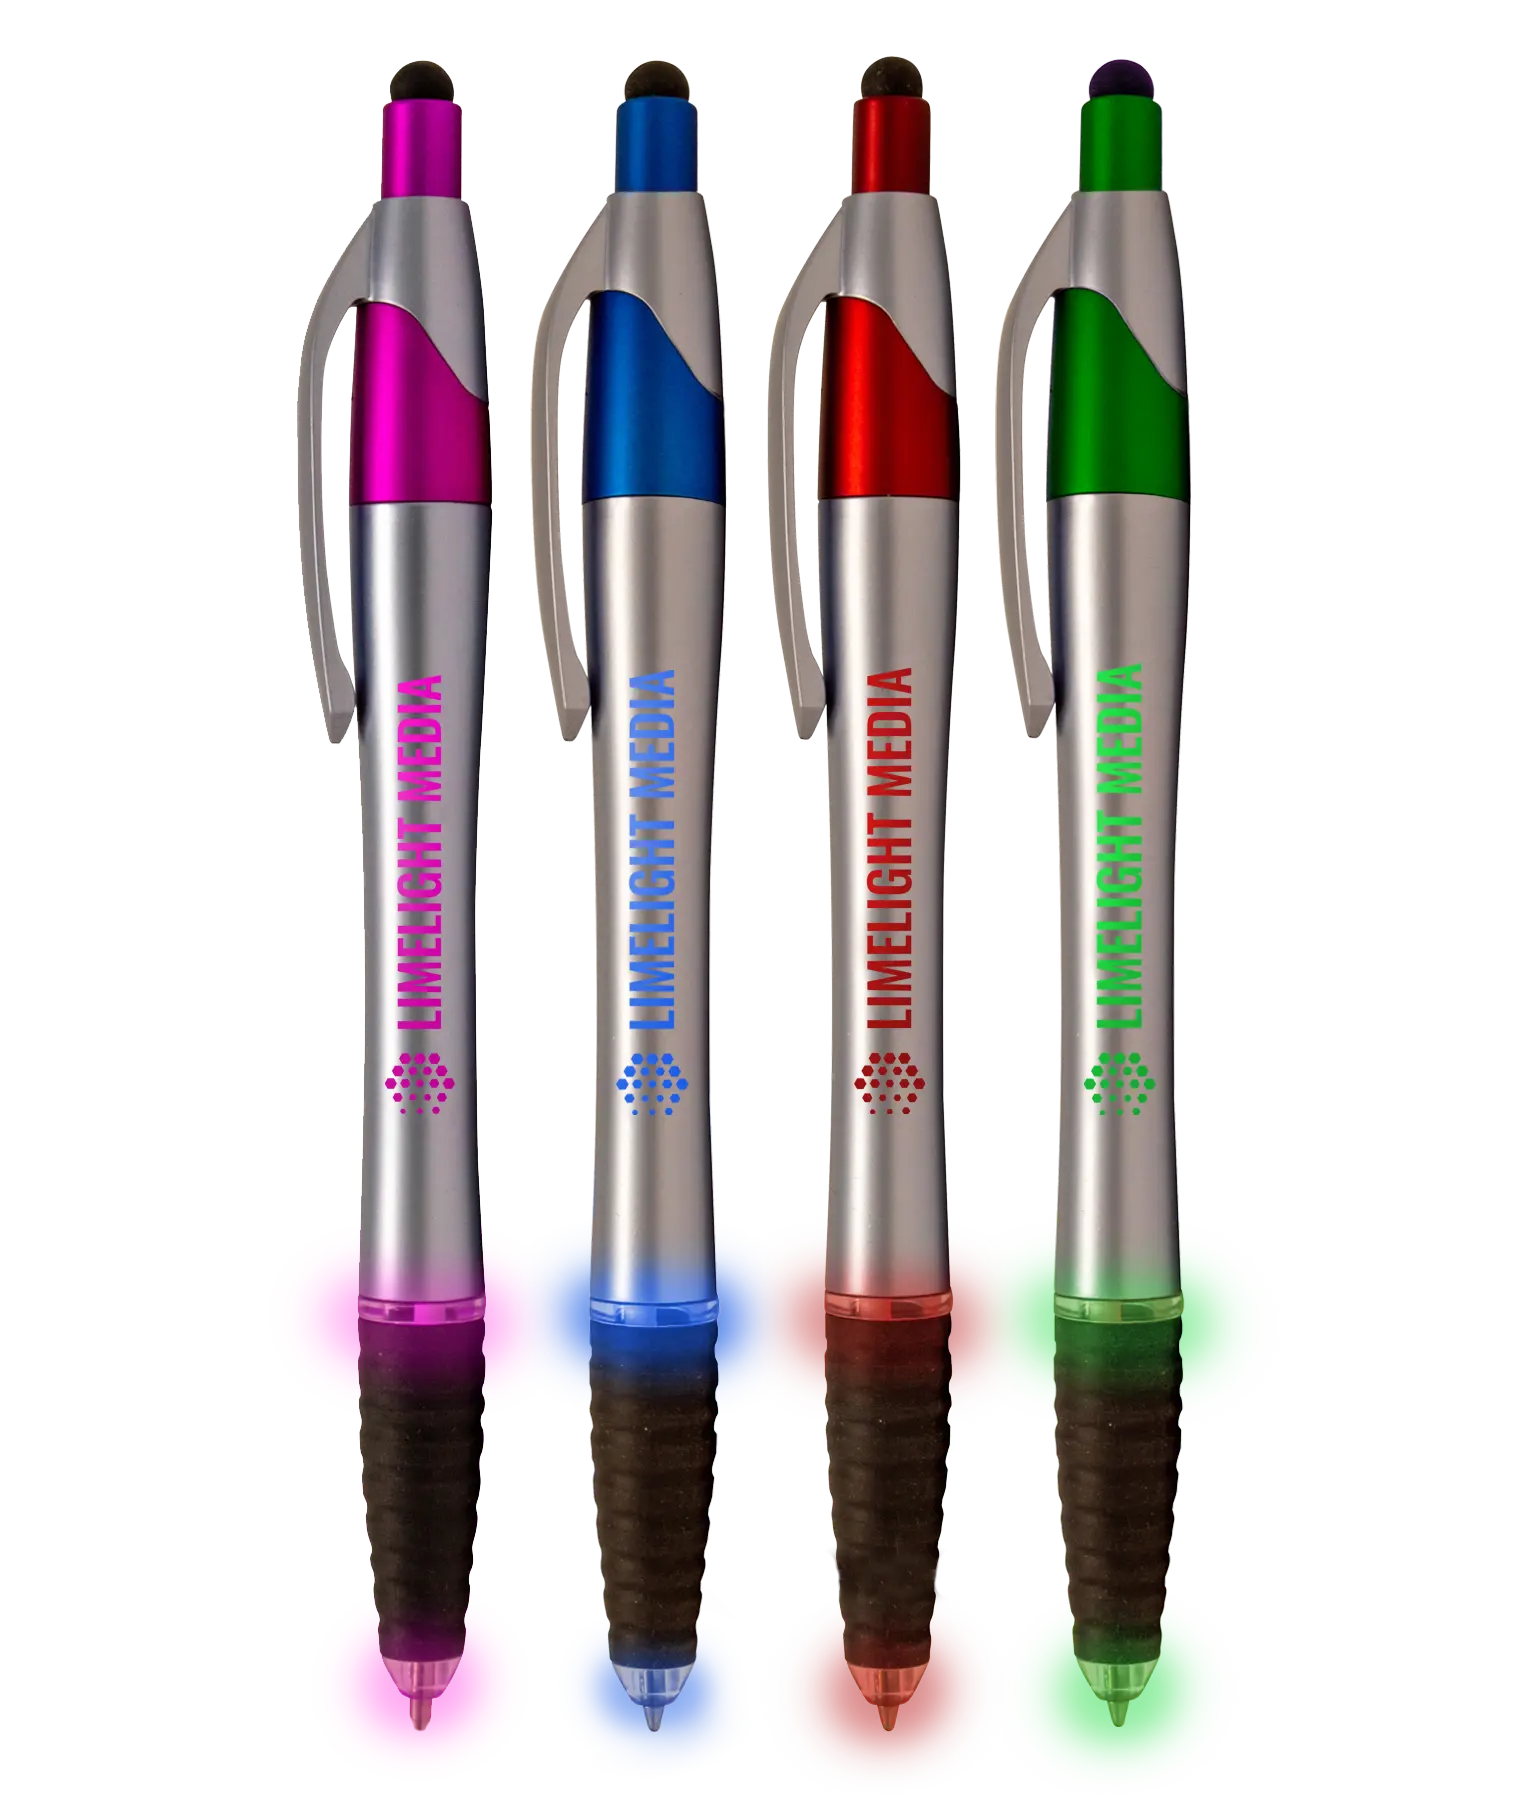 Javalina Glow Stylus Pens